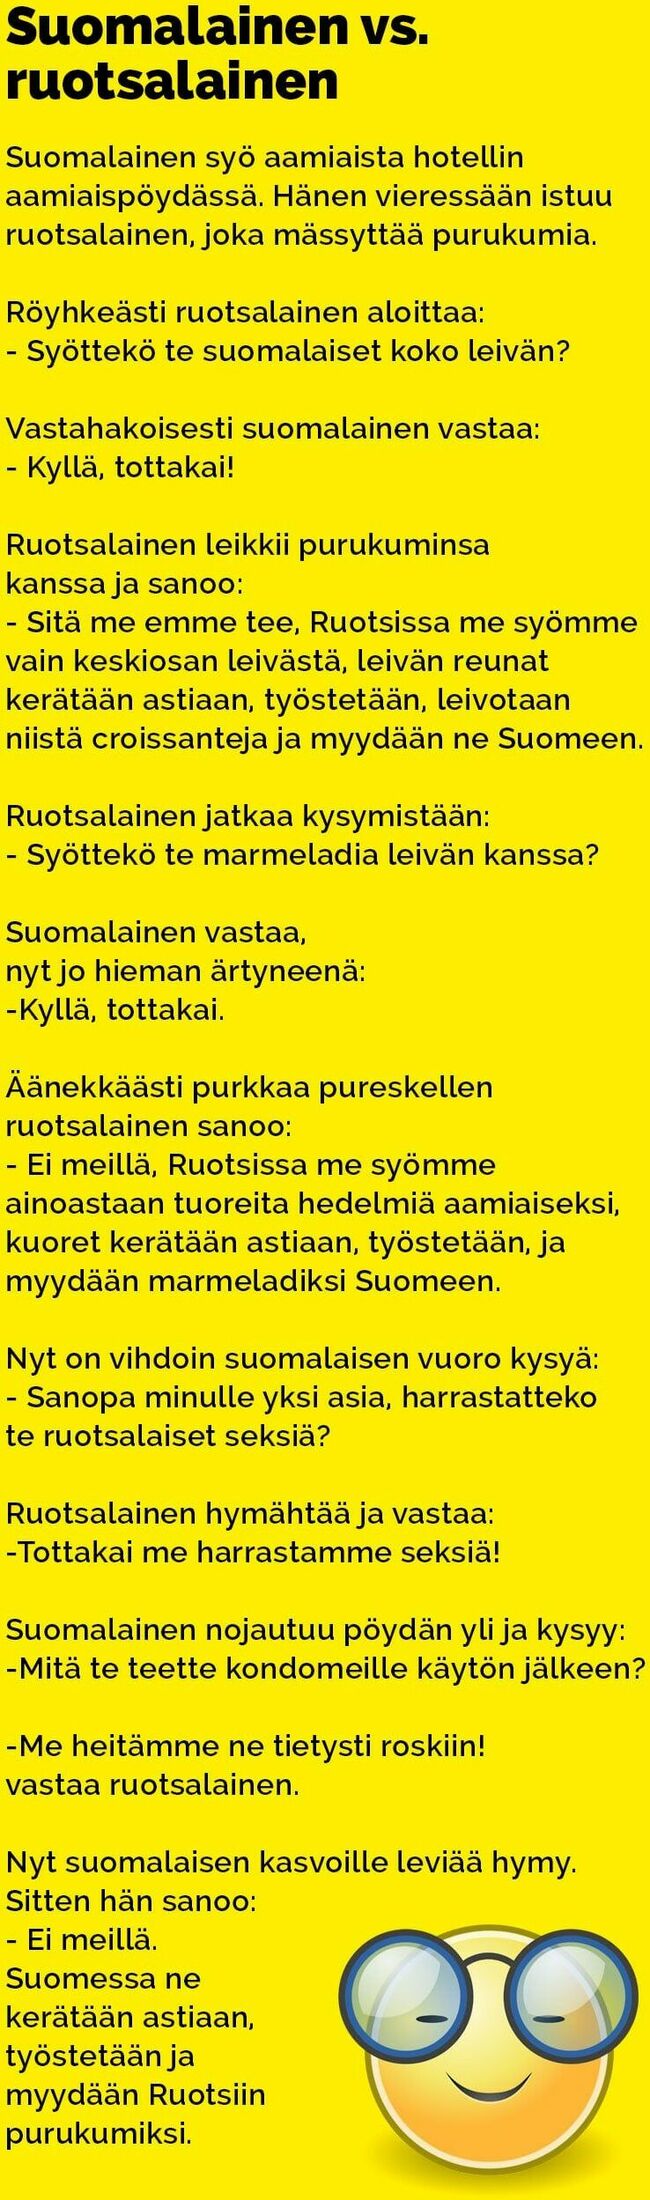 Suomalainen vs. ruotsalainen